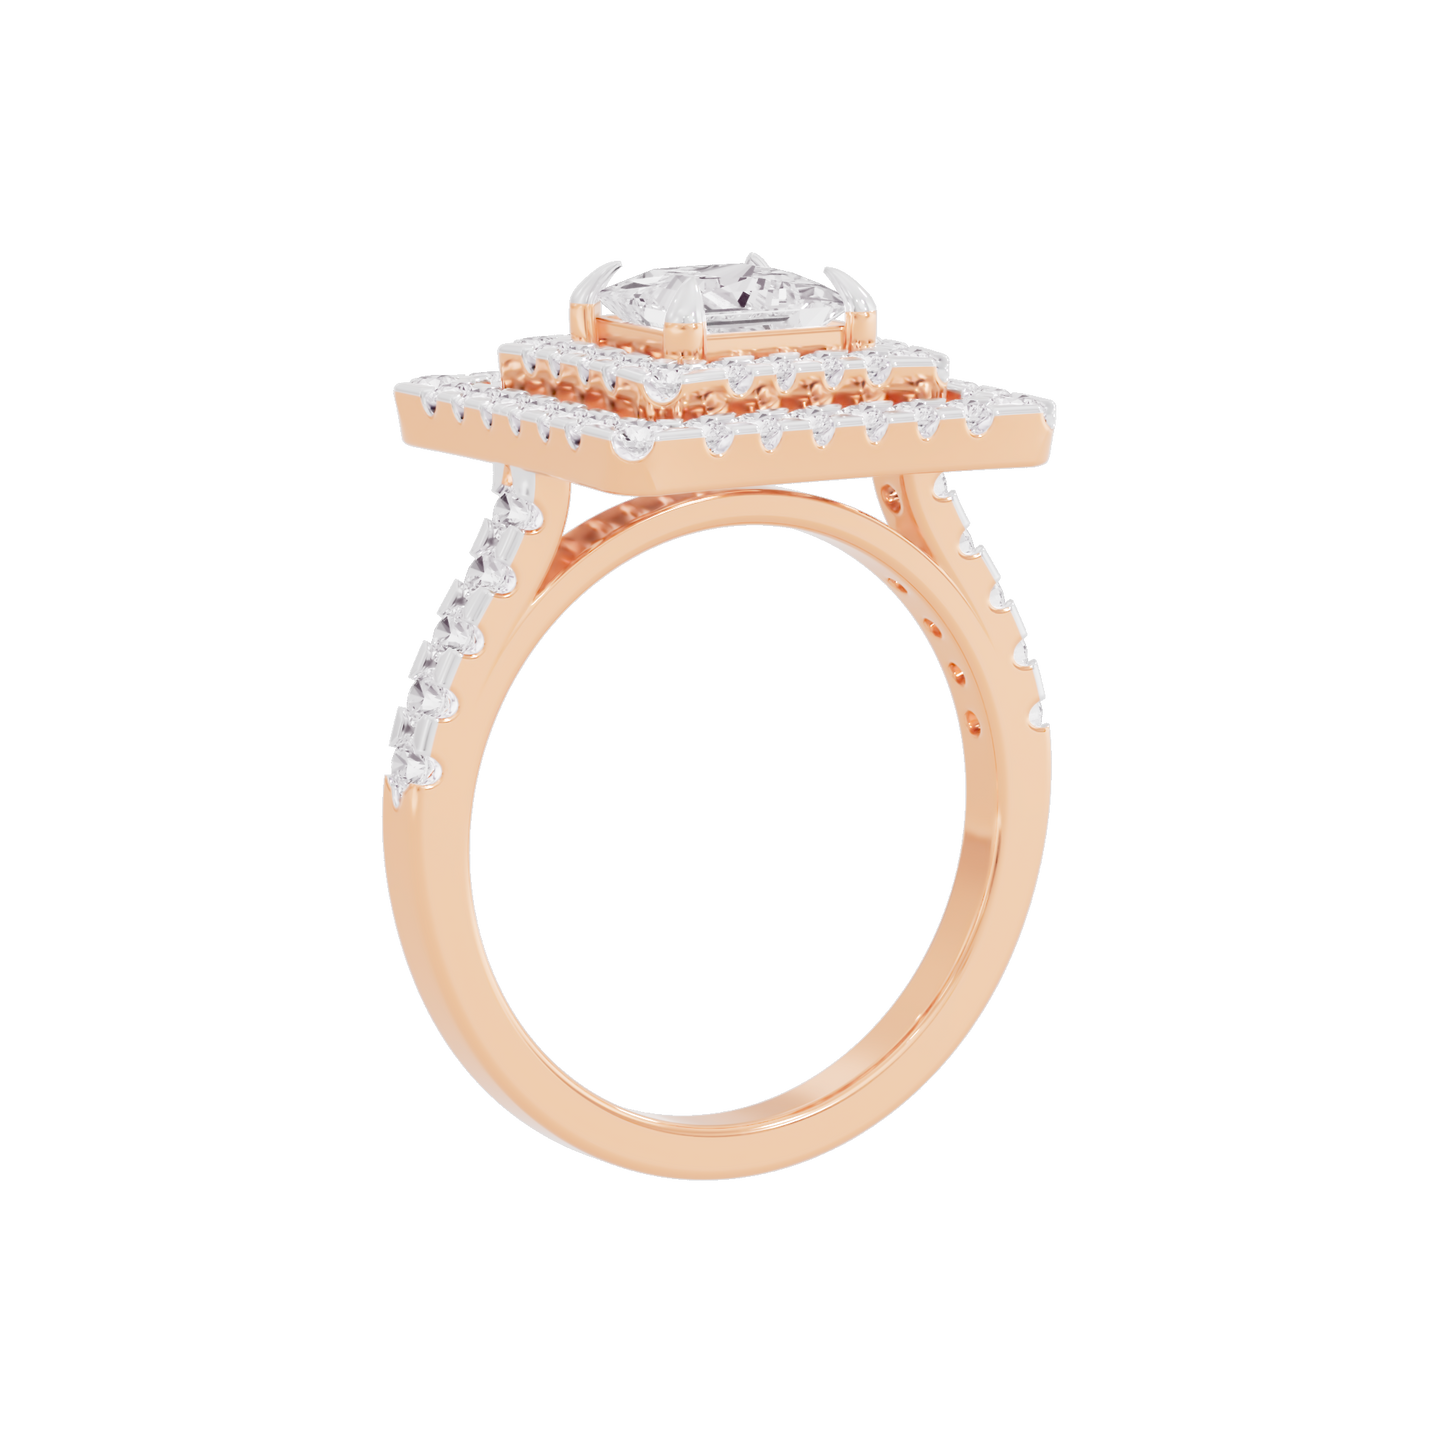 Blushing Bloom Diamond Ring